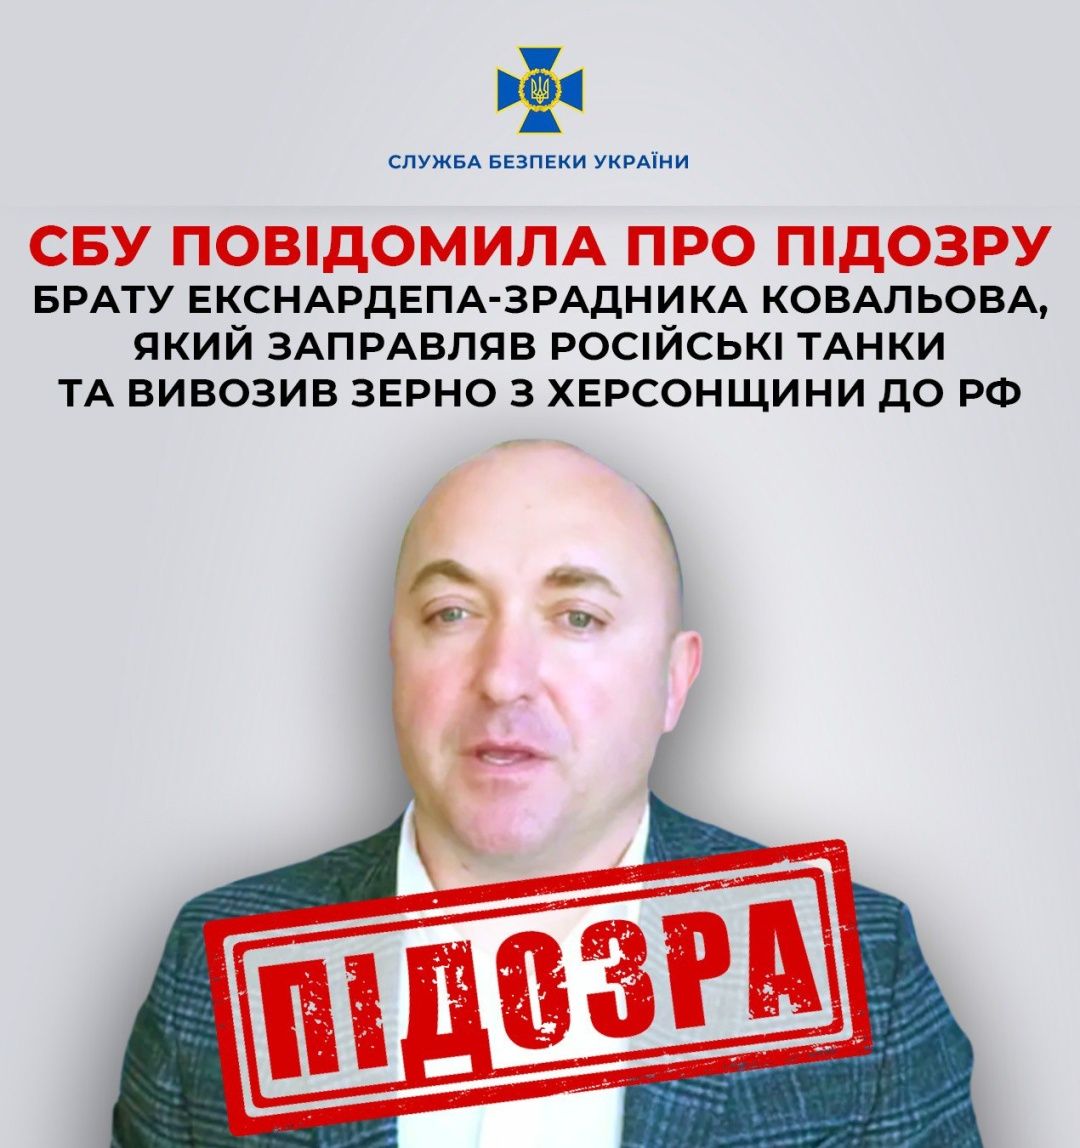 Депутат Херсонської облради Юрій Ковальов підозрюється у зраді та викраденні зерна